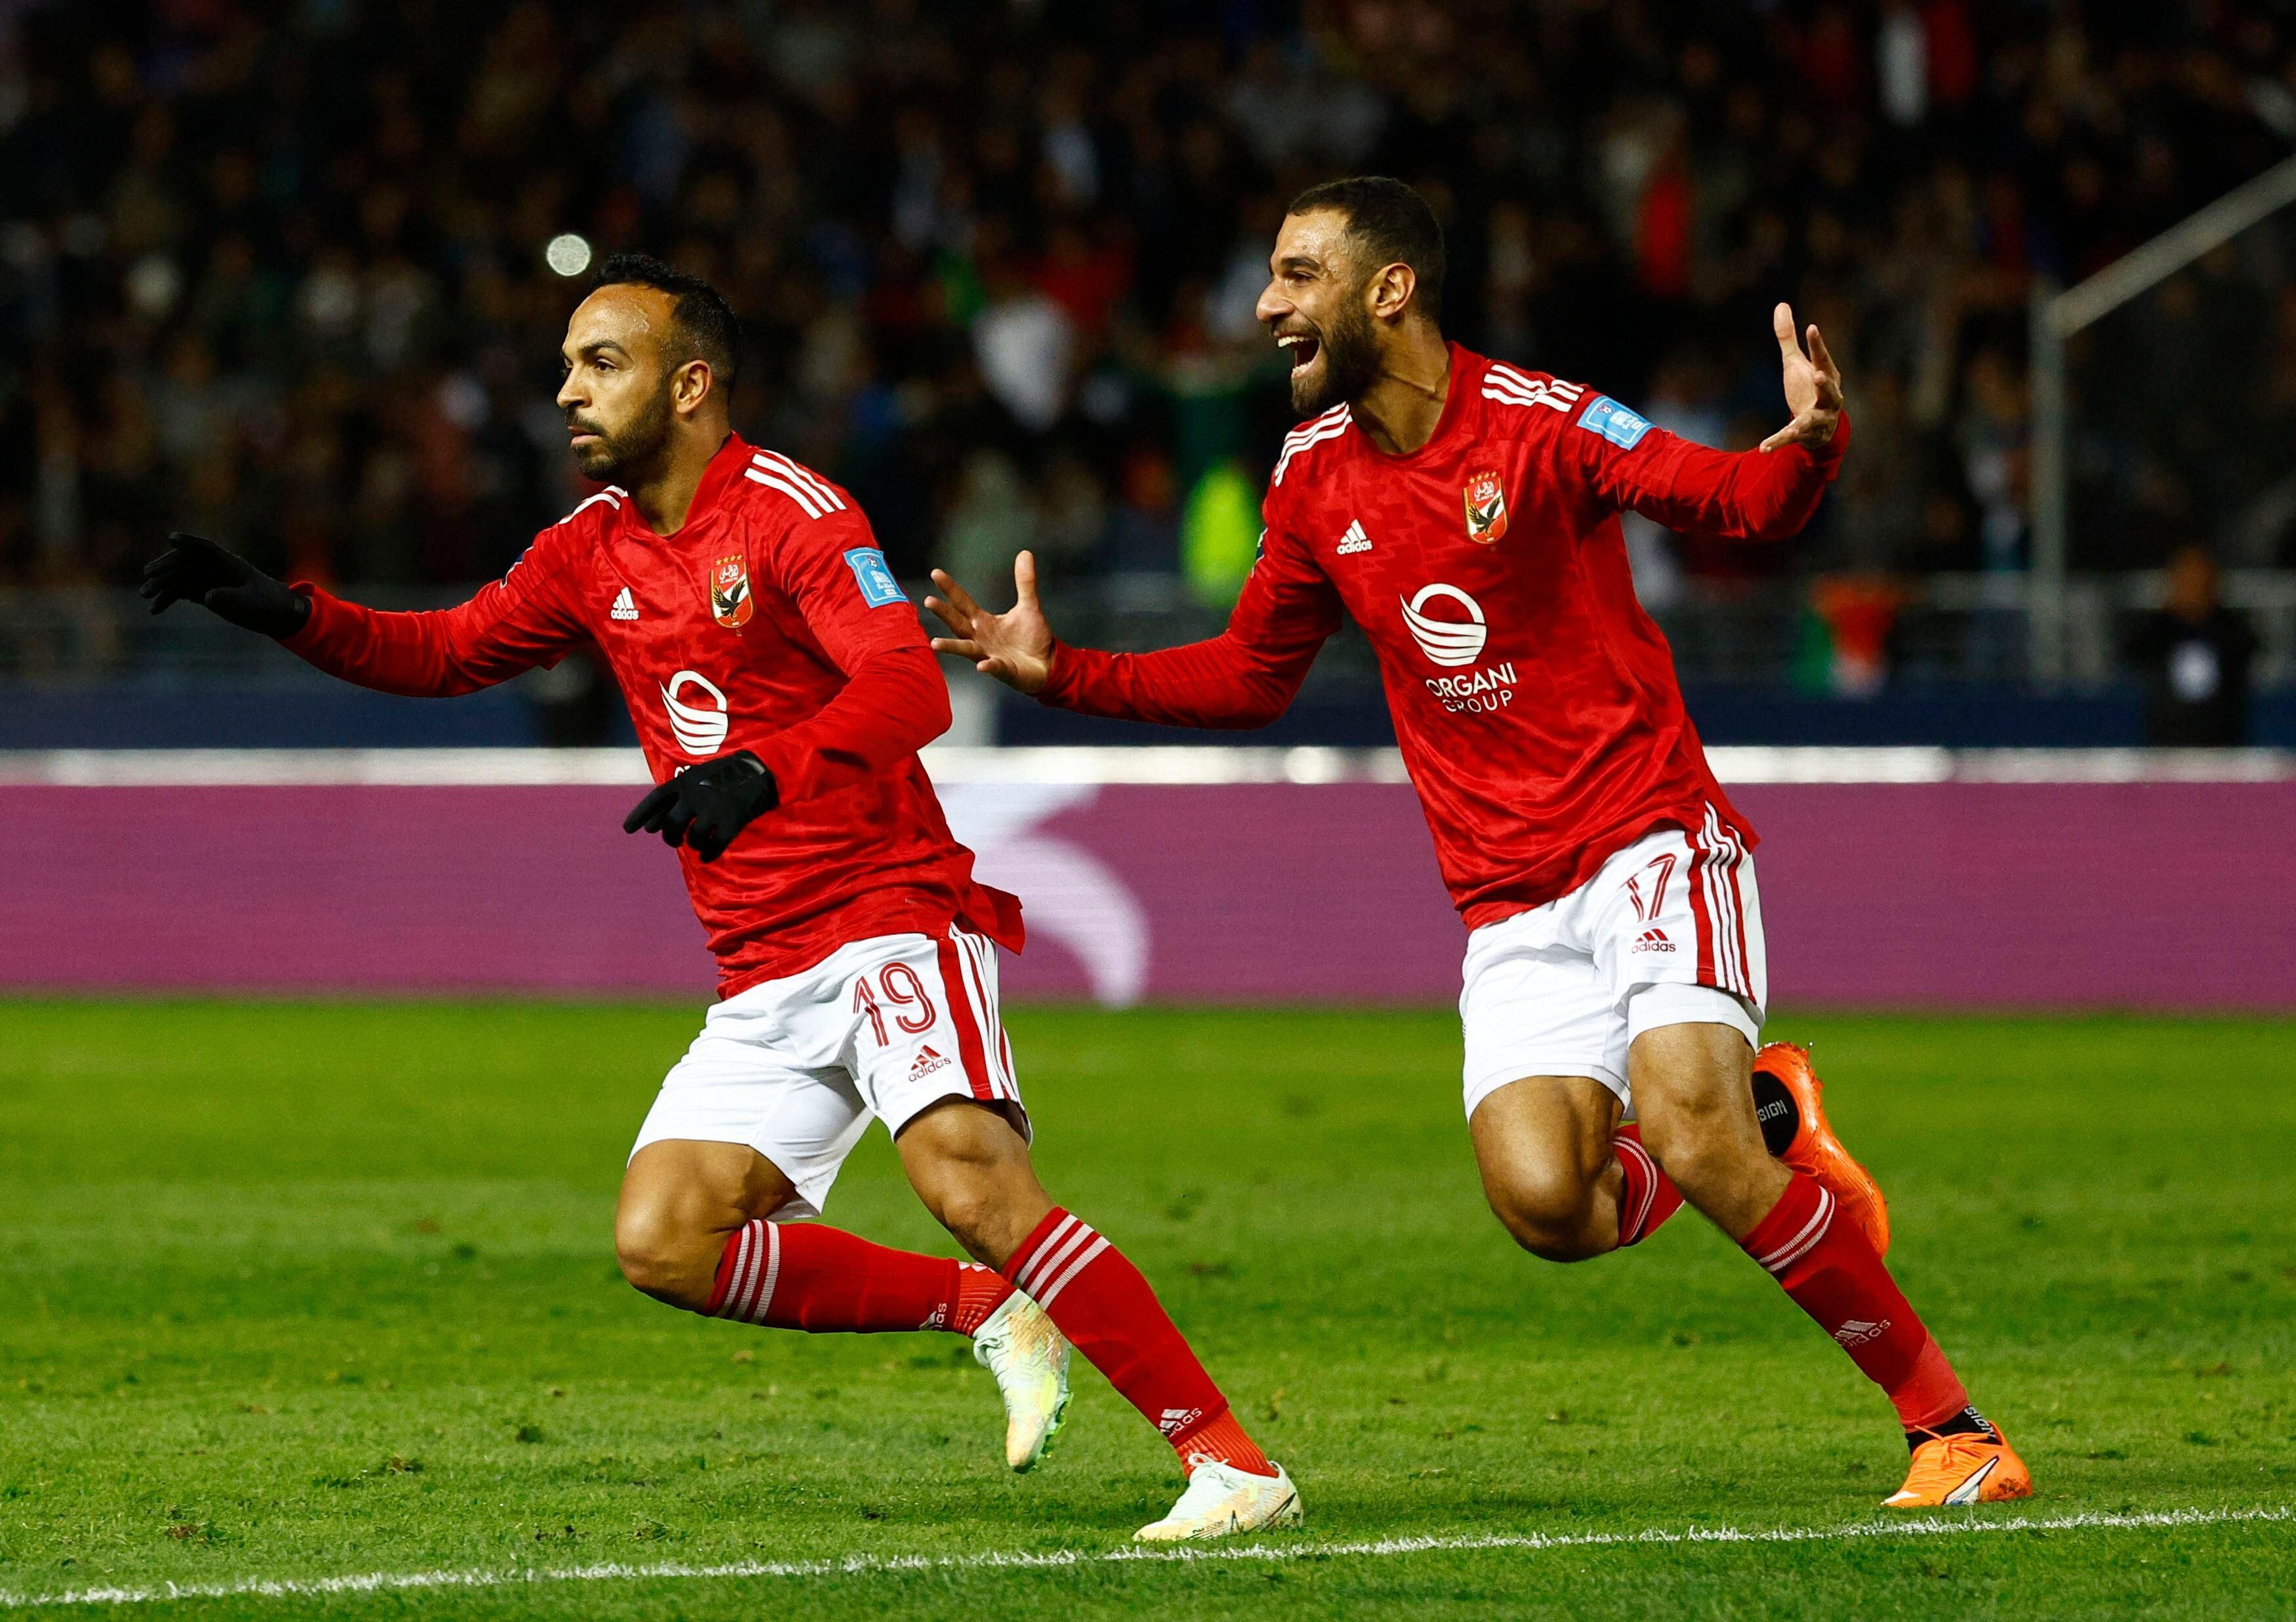 futebol agora Real Madrid vence Al-Ahly e vai enfrentar o Ah-Hilal na final  do Mundial de Clubes